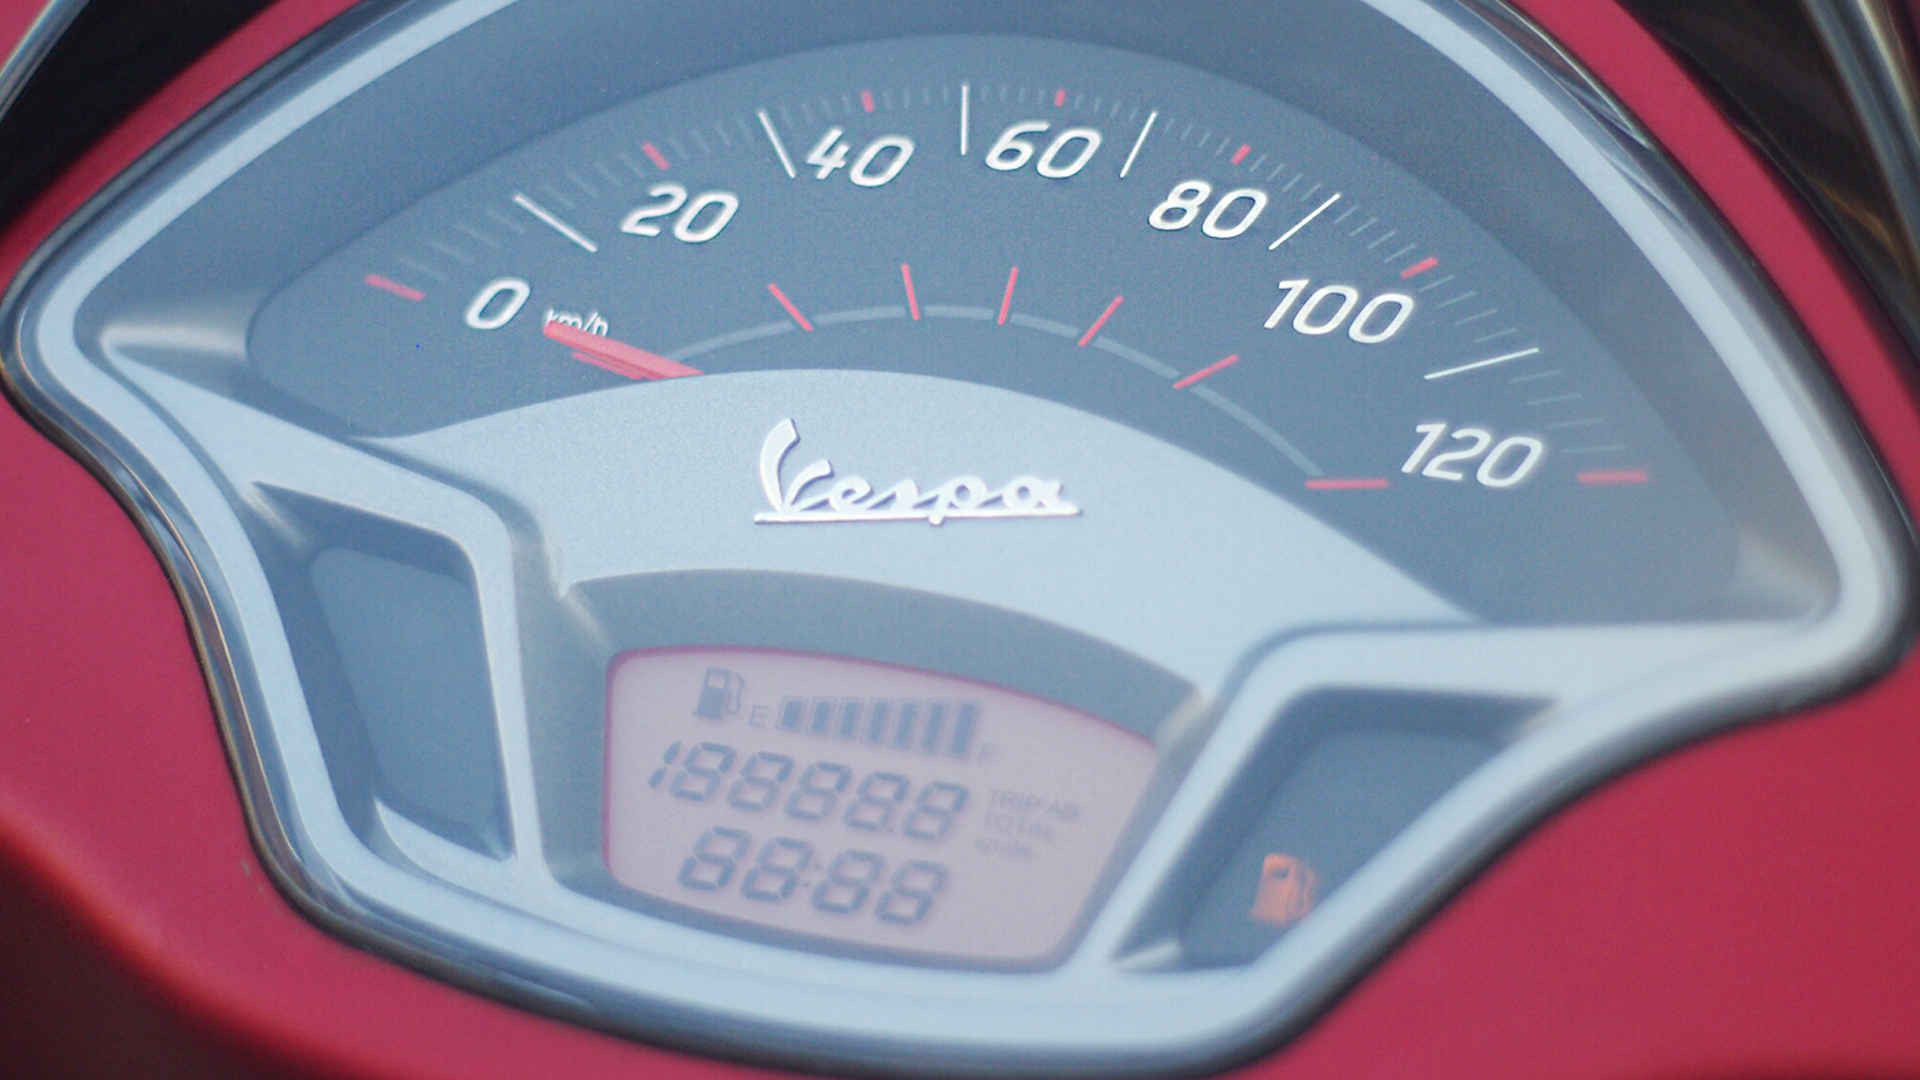 Vespa SXL 2015 150 Compare